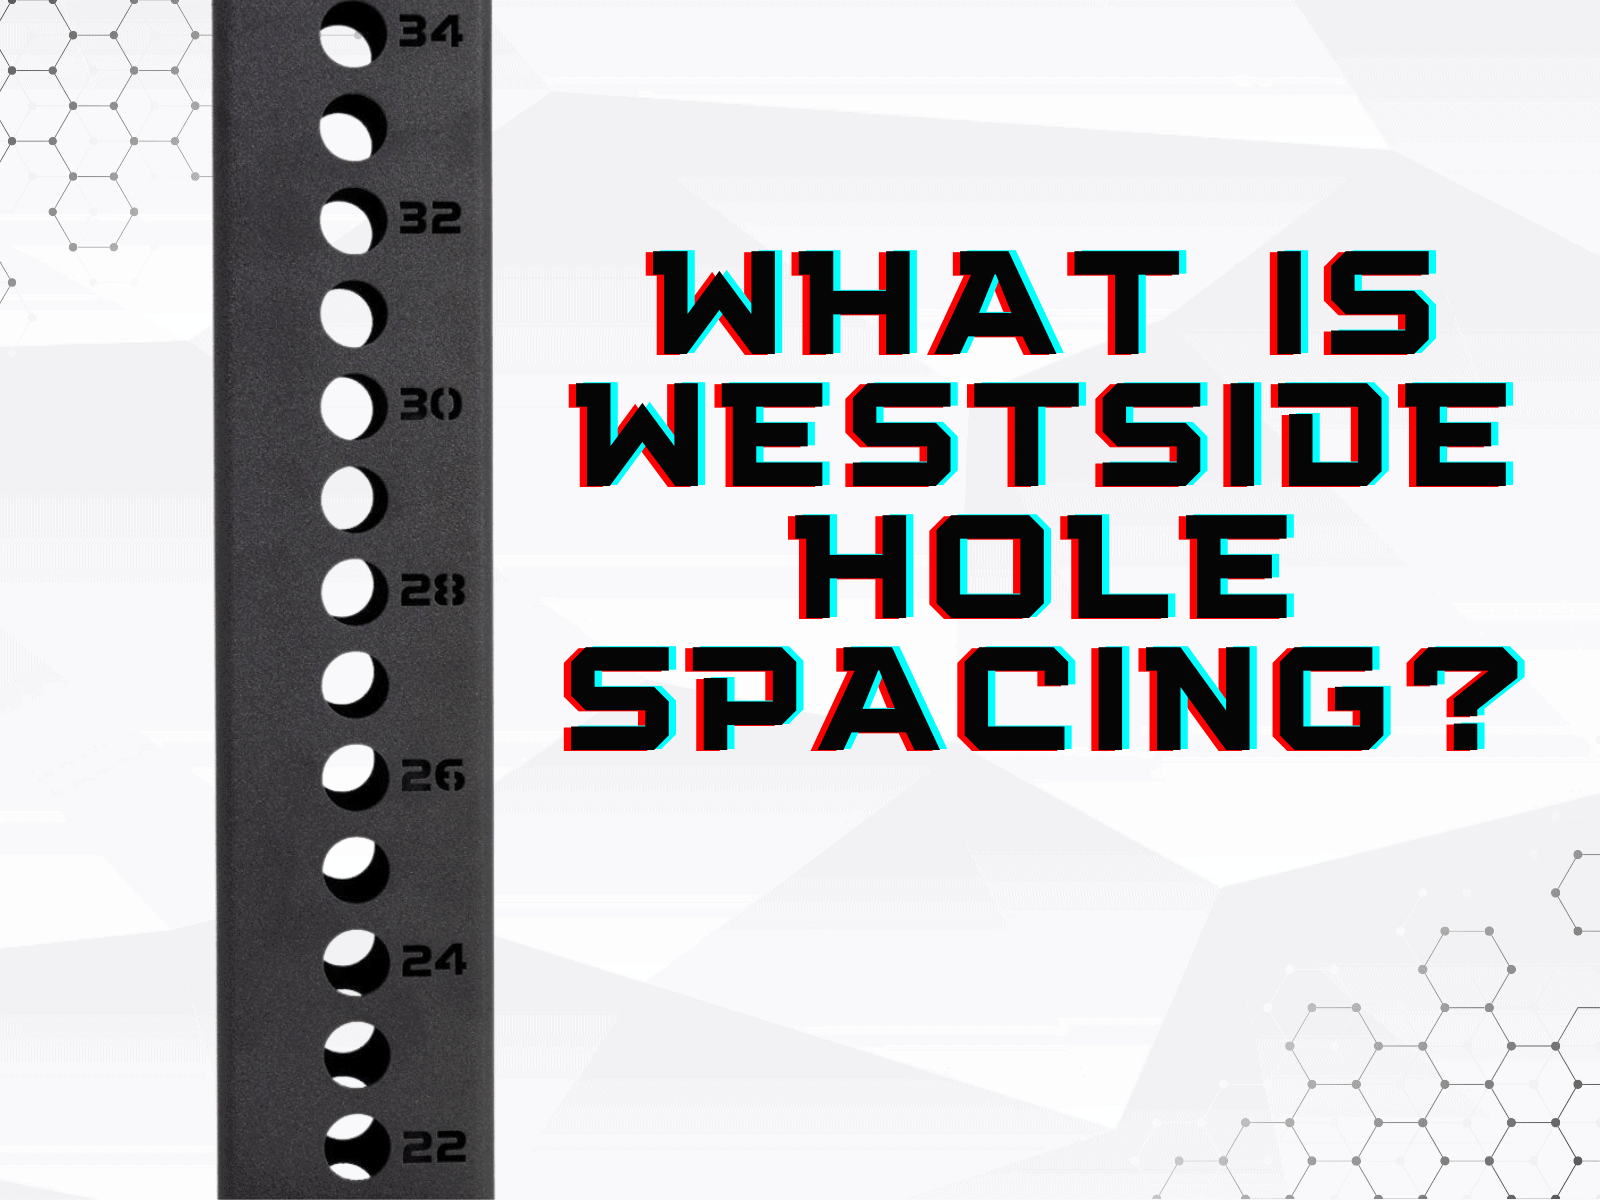 westside hole spacing